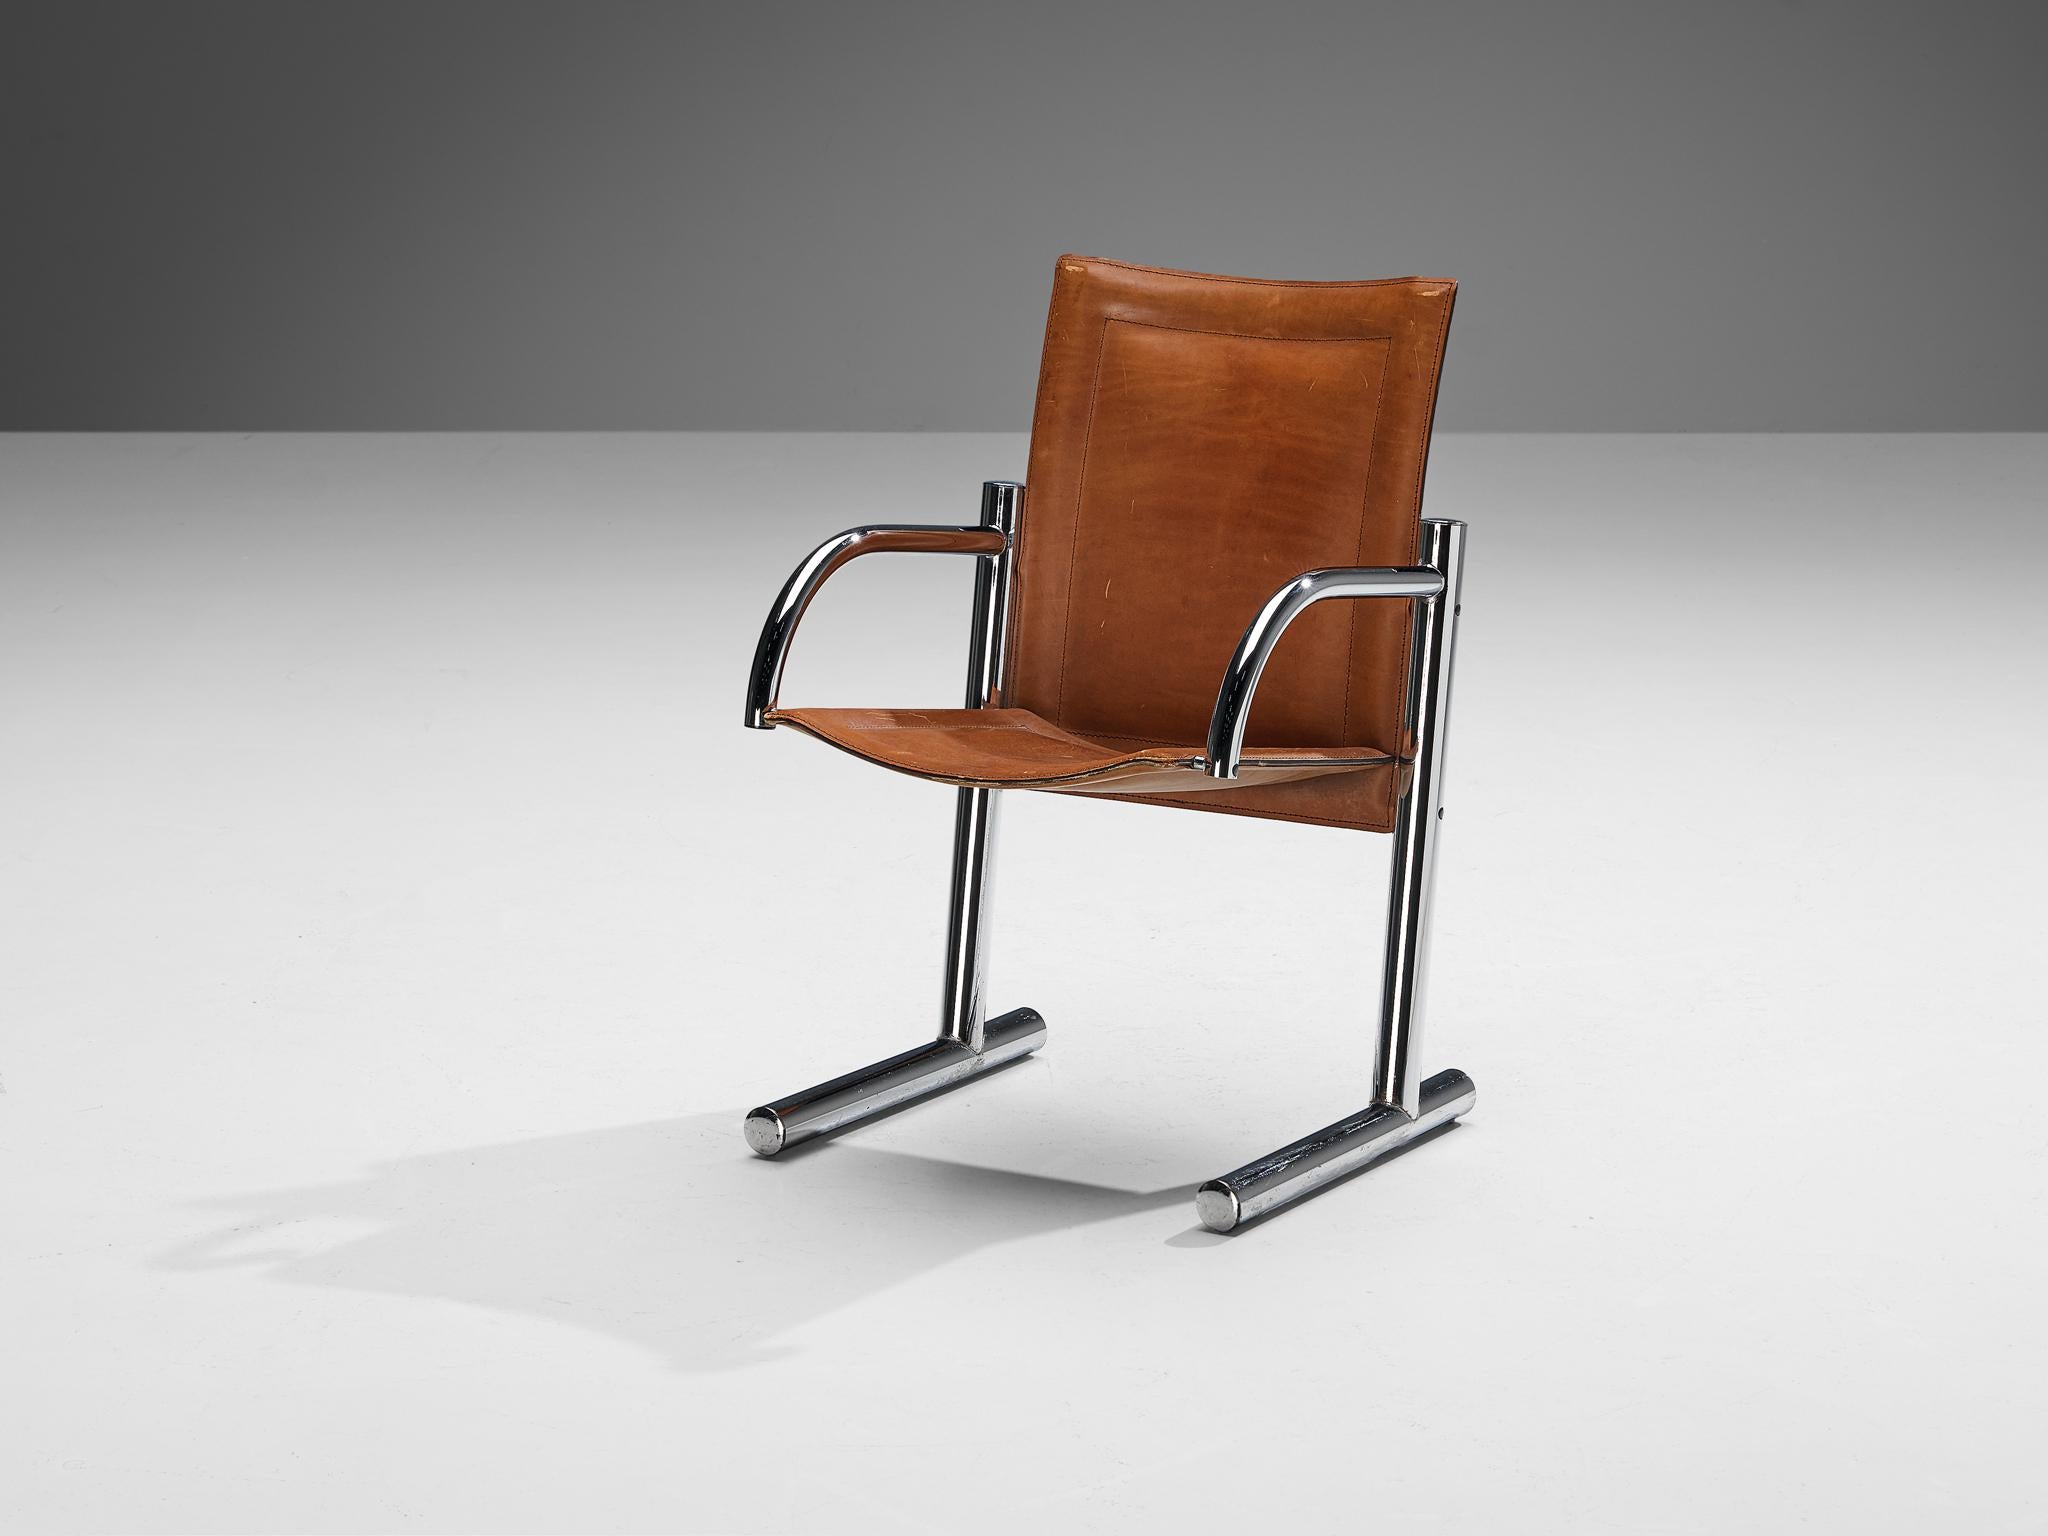 Esstischstuhl, Sattelleder, verchromter Stahl, Italien, 1970er Jahre

Dieser robuste Sessel ist rein und klar in seiner Ausführung, was dem Stuhl ein schlichtes und zugleich stattliches Aussehen verleiht. Das Gestell aus verchromtem Stahlrohr